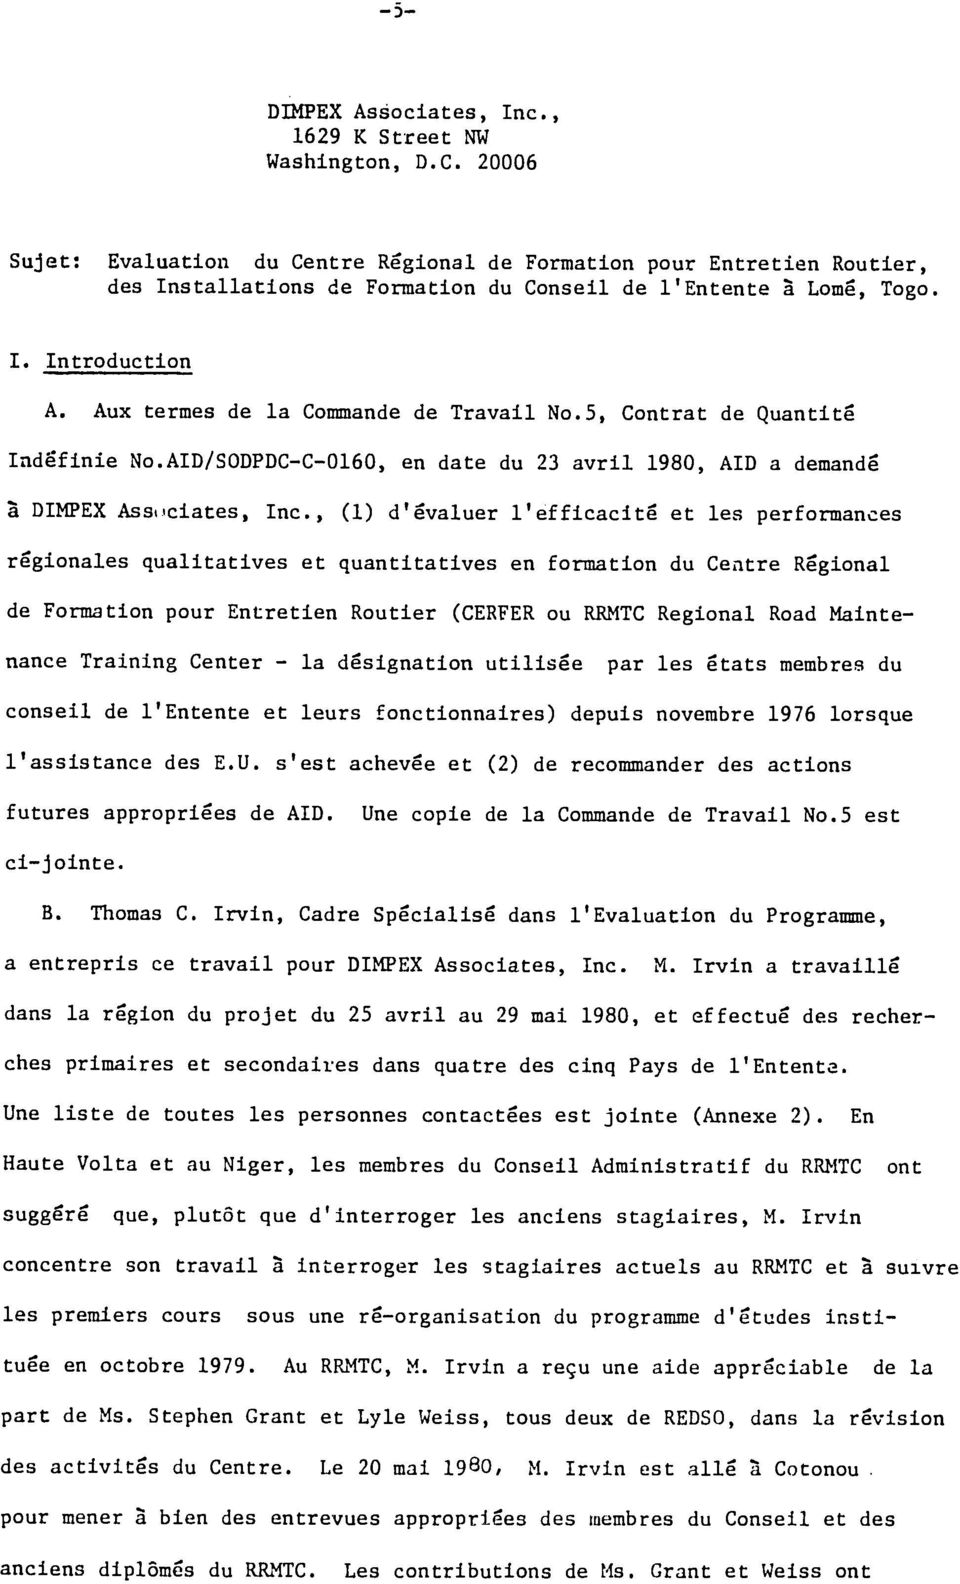 Aux termes de la Commande de Travail No.5, Contrat de Quantite Indefinie No.AID/SODPDC-C-0160, en date du 23 avril 1980, AID a demande 2 DIMPEX Assiciates, Inc.